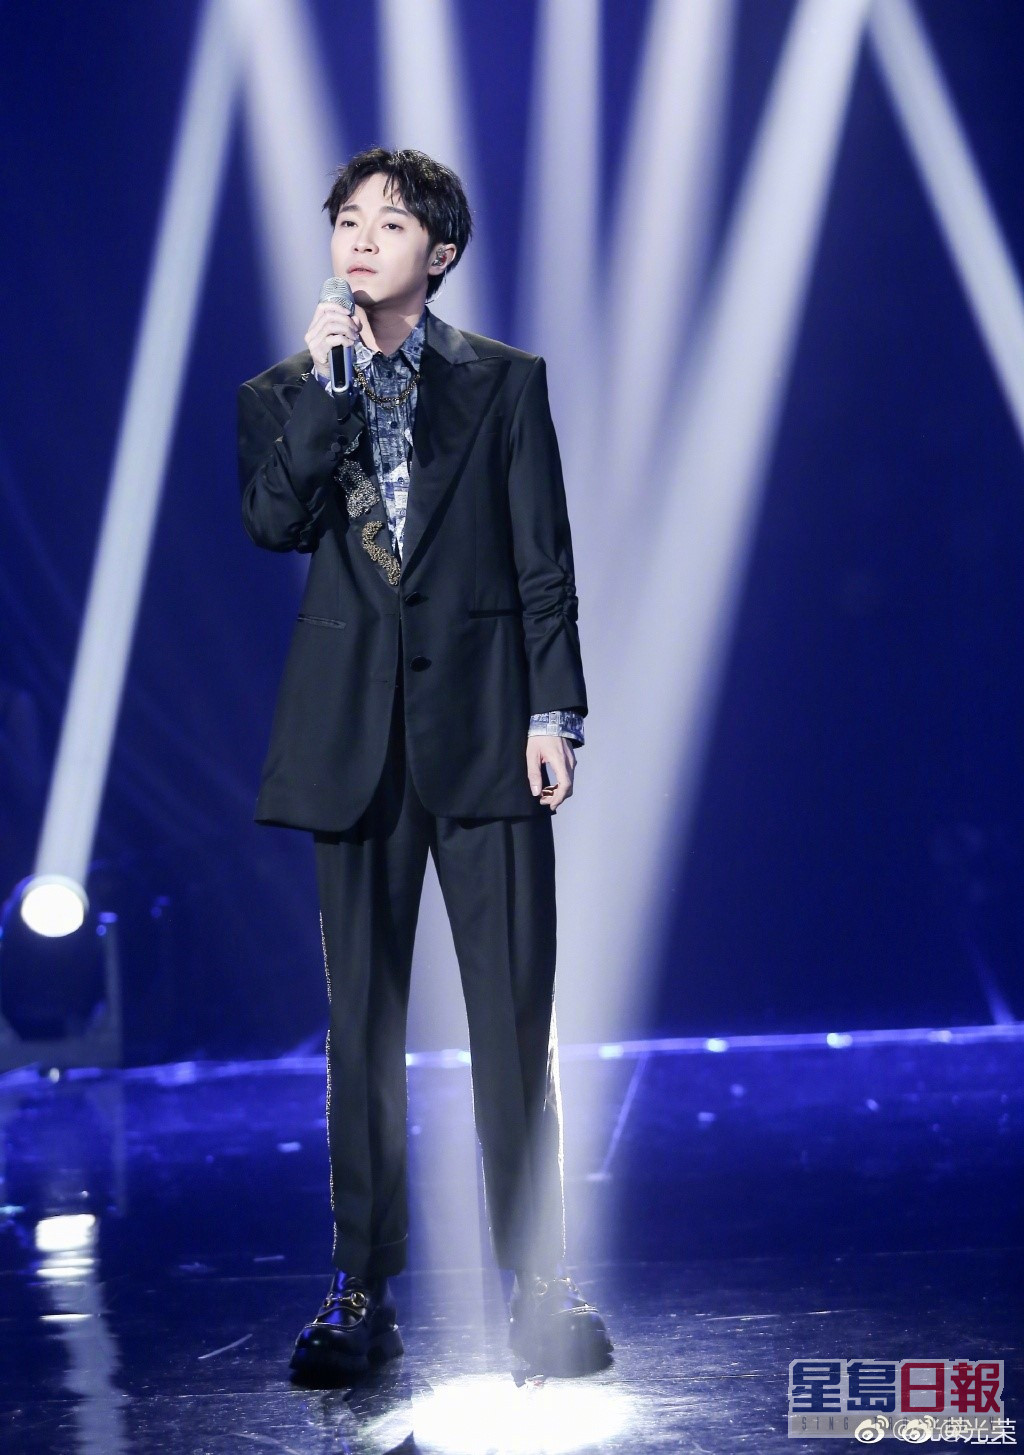 吴青峰之前参加过湖南卫视音乐竞技节目《歌手》。